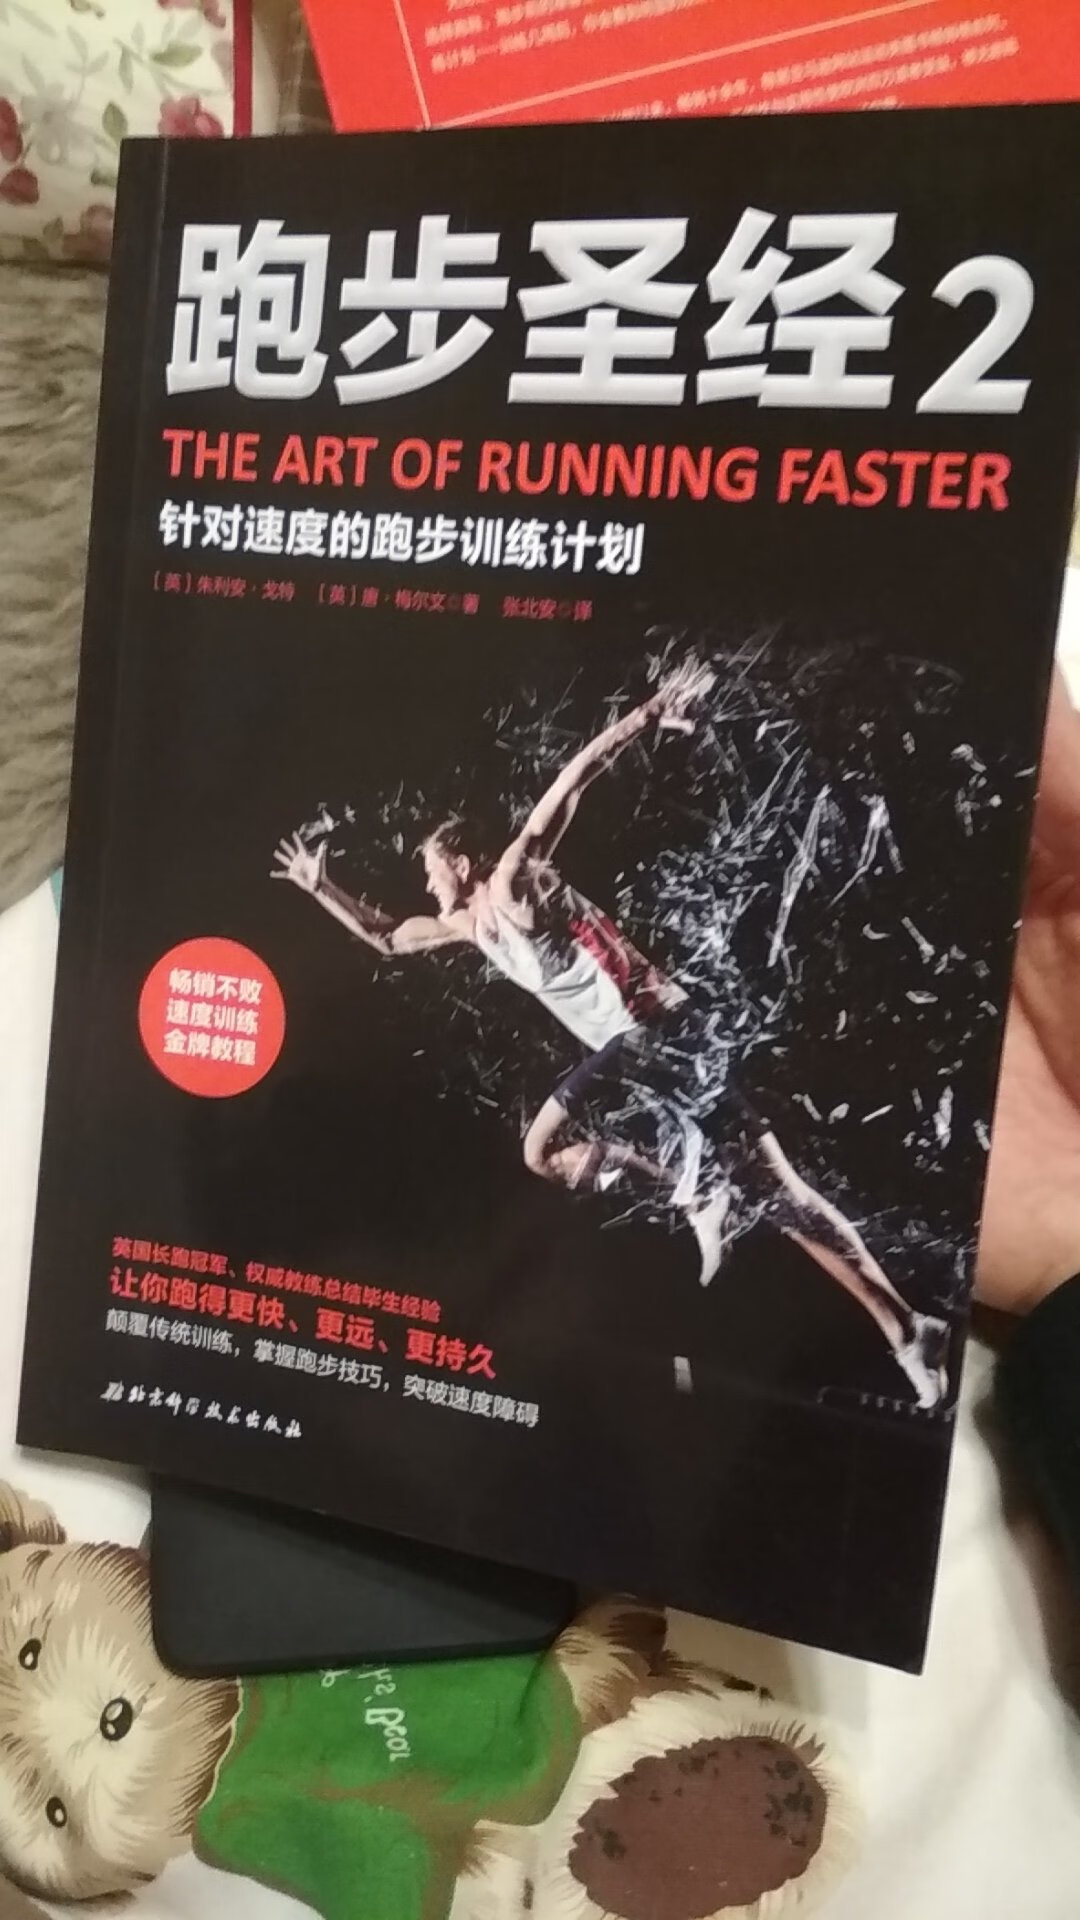 这本书没有跑步**那么专业。但是里面关于跑步的几个故事能引发人思考。适合泛读